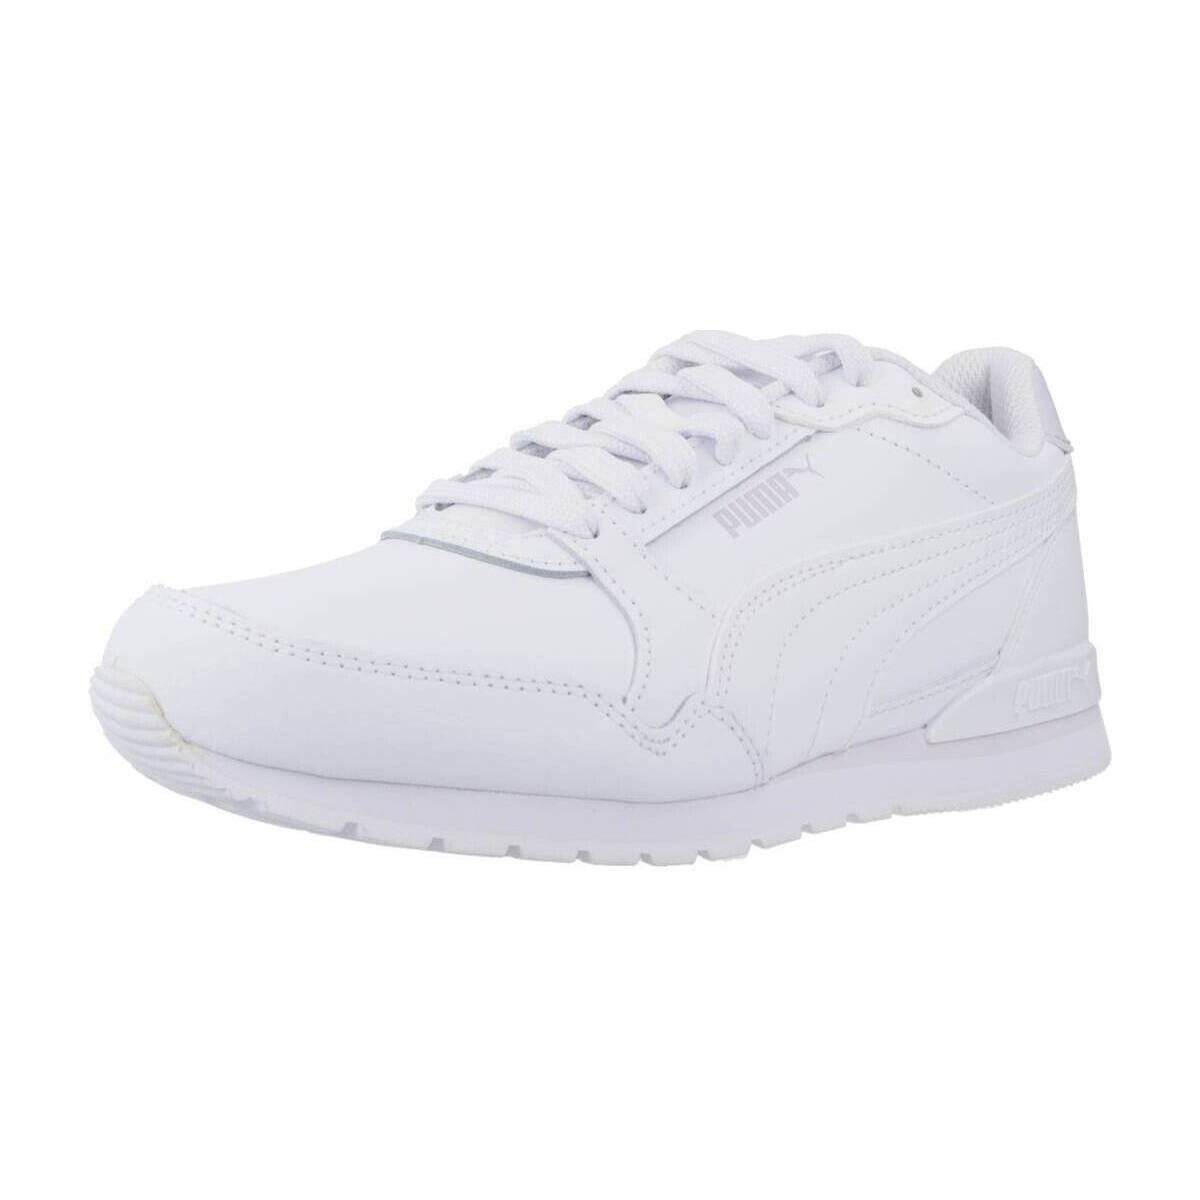 Παπούτσια Γυναίκα Sneakers Puma ST RUNNER V3 L Άσπρο